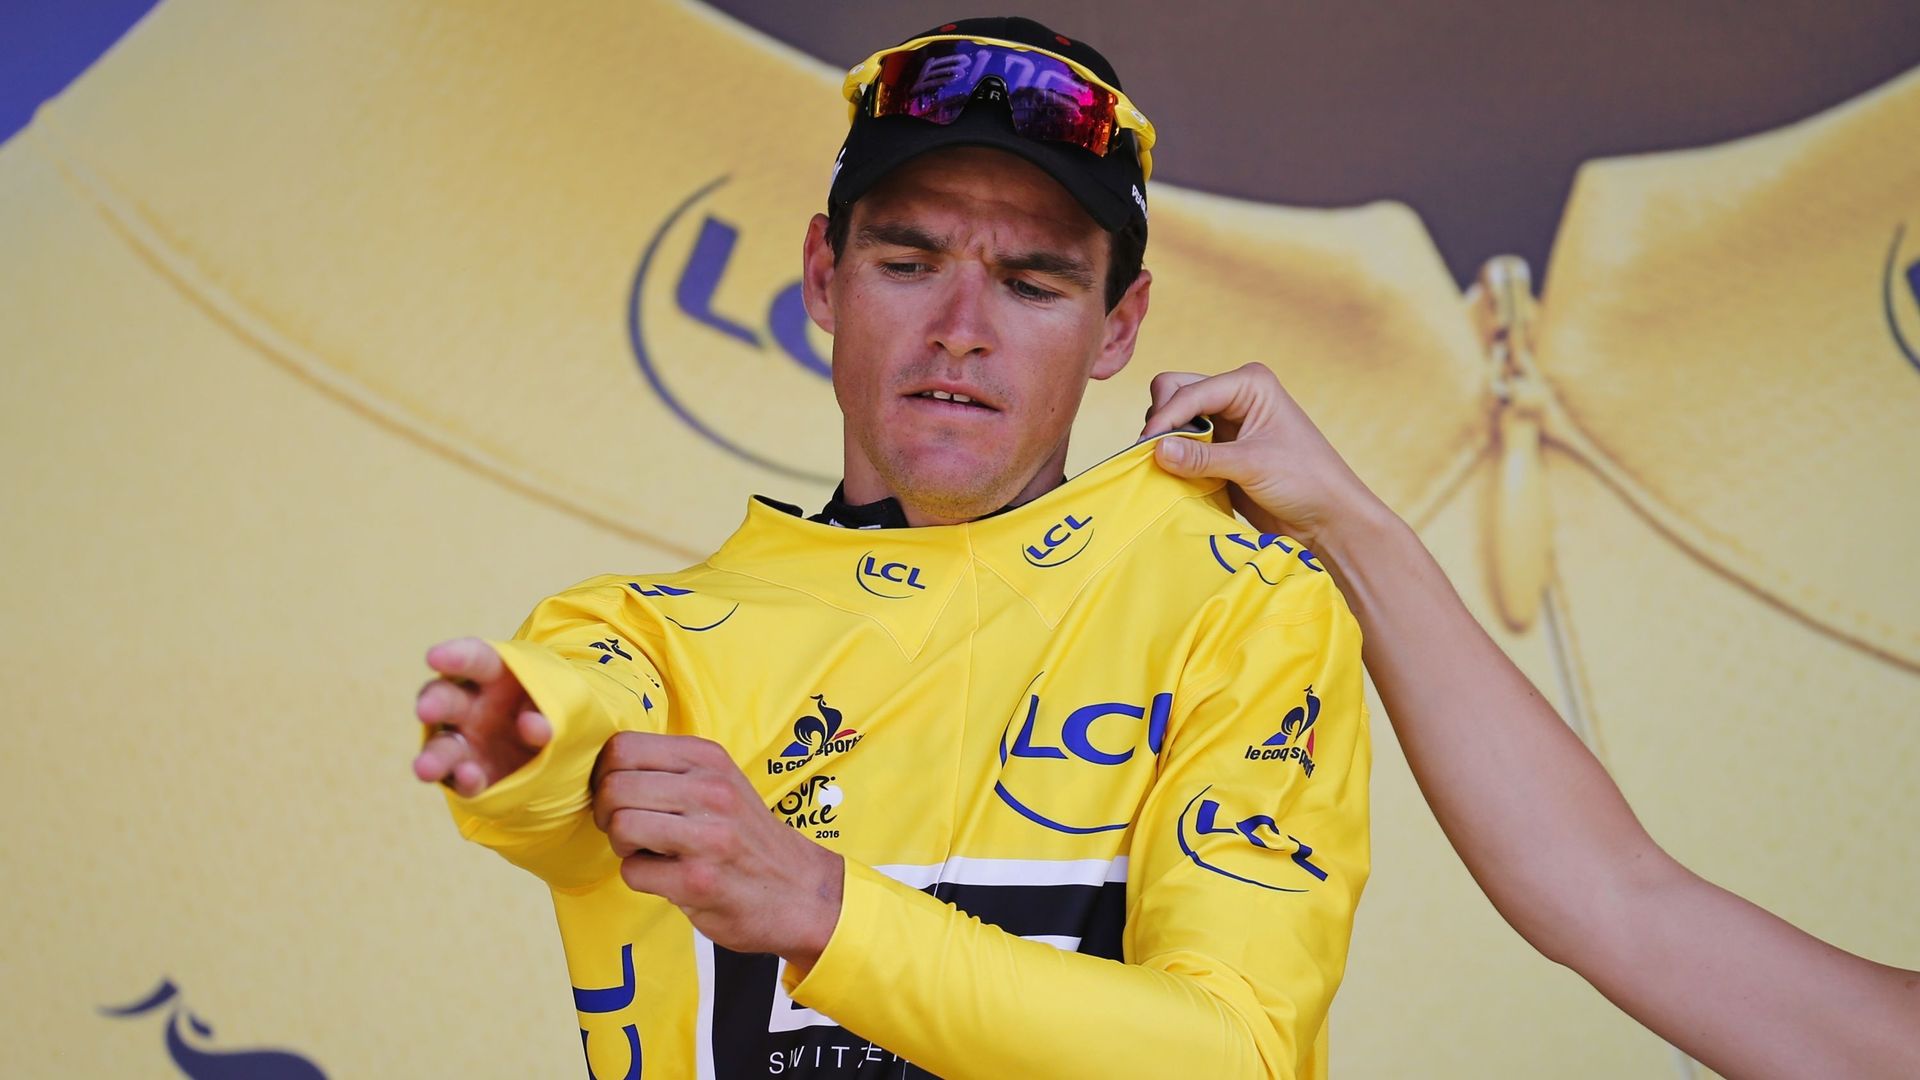 Cyclisme - Tour de France : Greg Van Avermaet enfile le maillot jaune après sa victoire au Lioran, sur la 5ème étape du Tour de France 2016.  